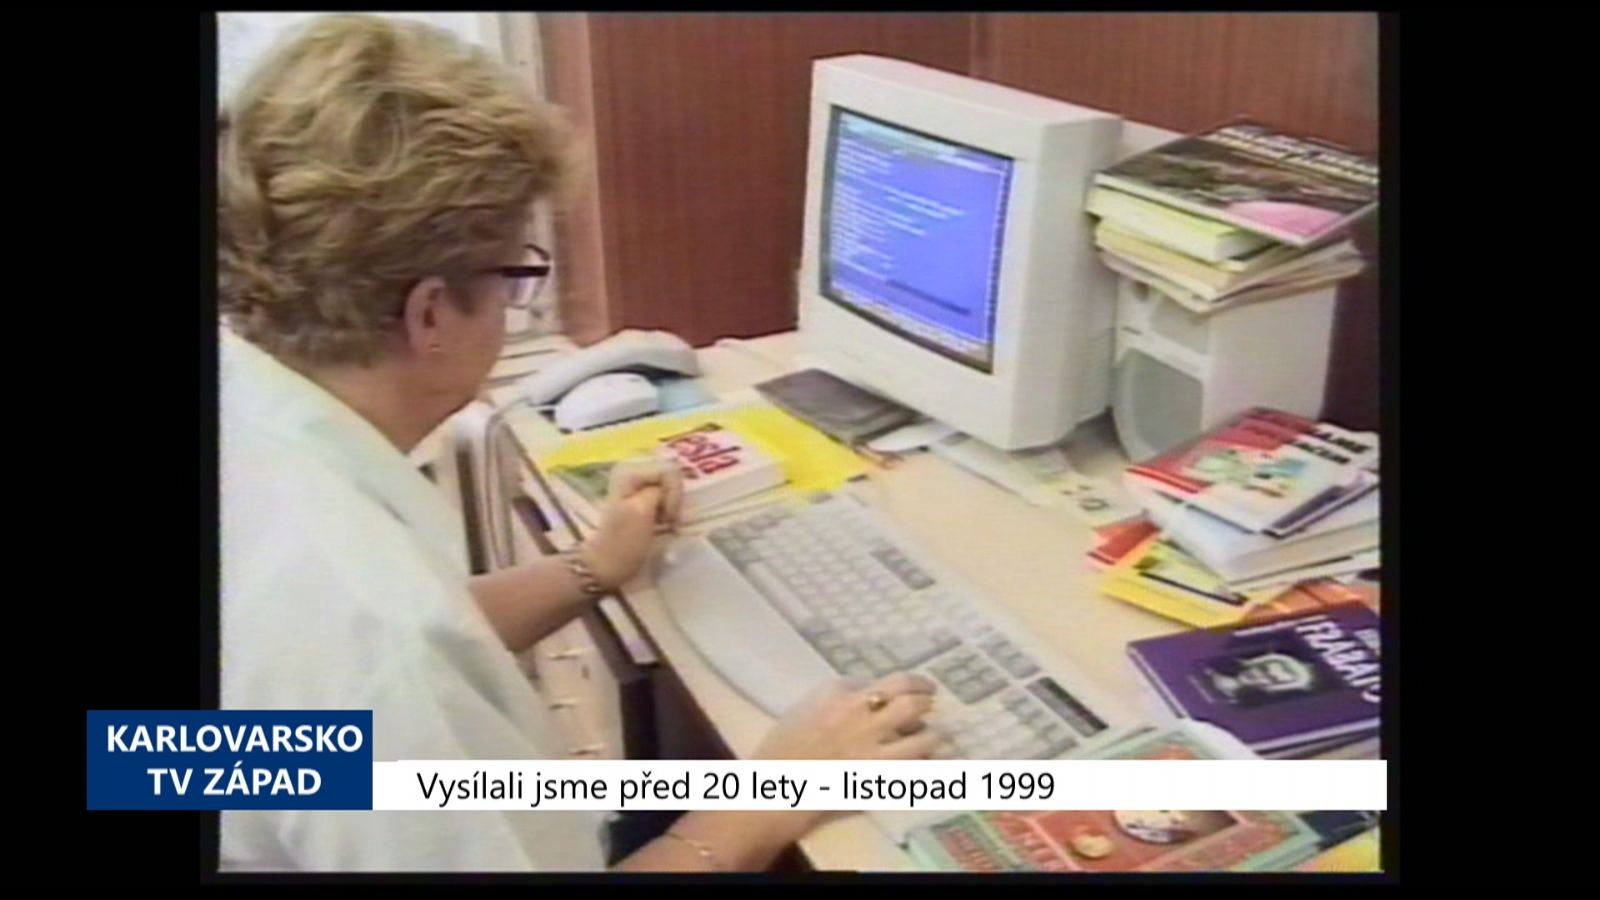 1999 – Cheb: Týden knihoven aneb Z duševní potravy obezita nehrozí (TV Západ)